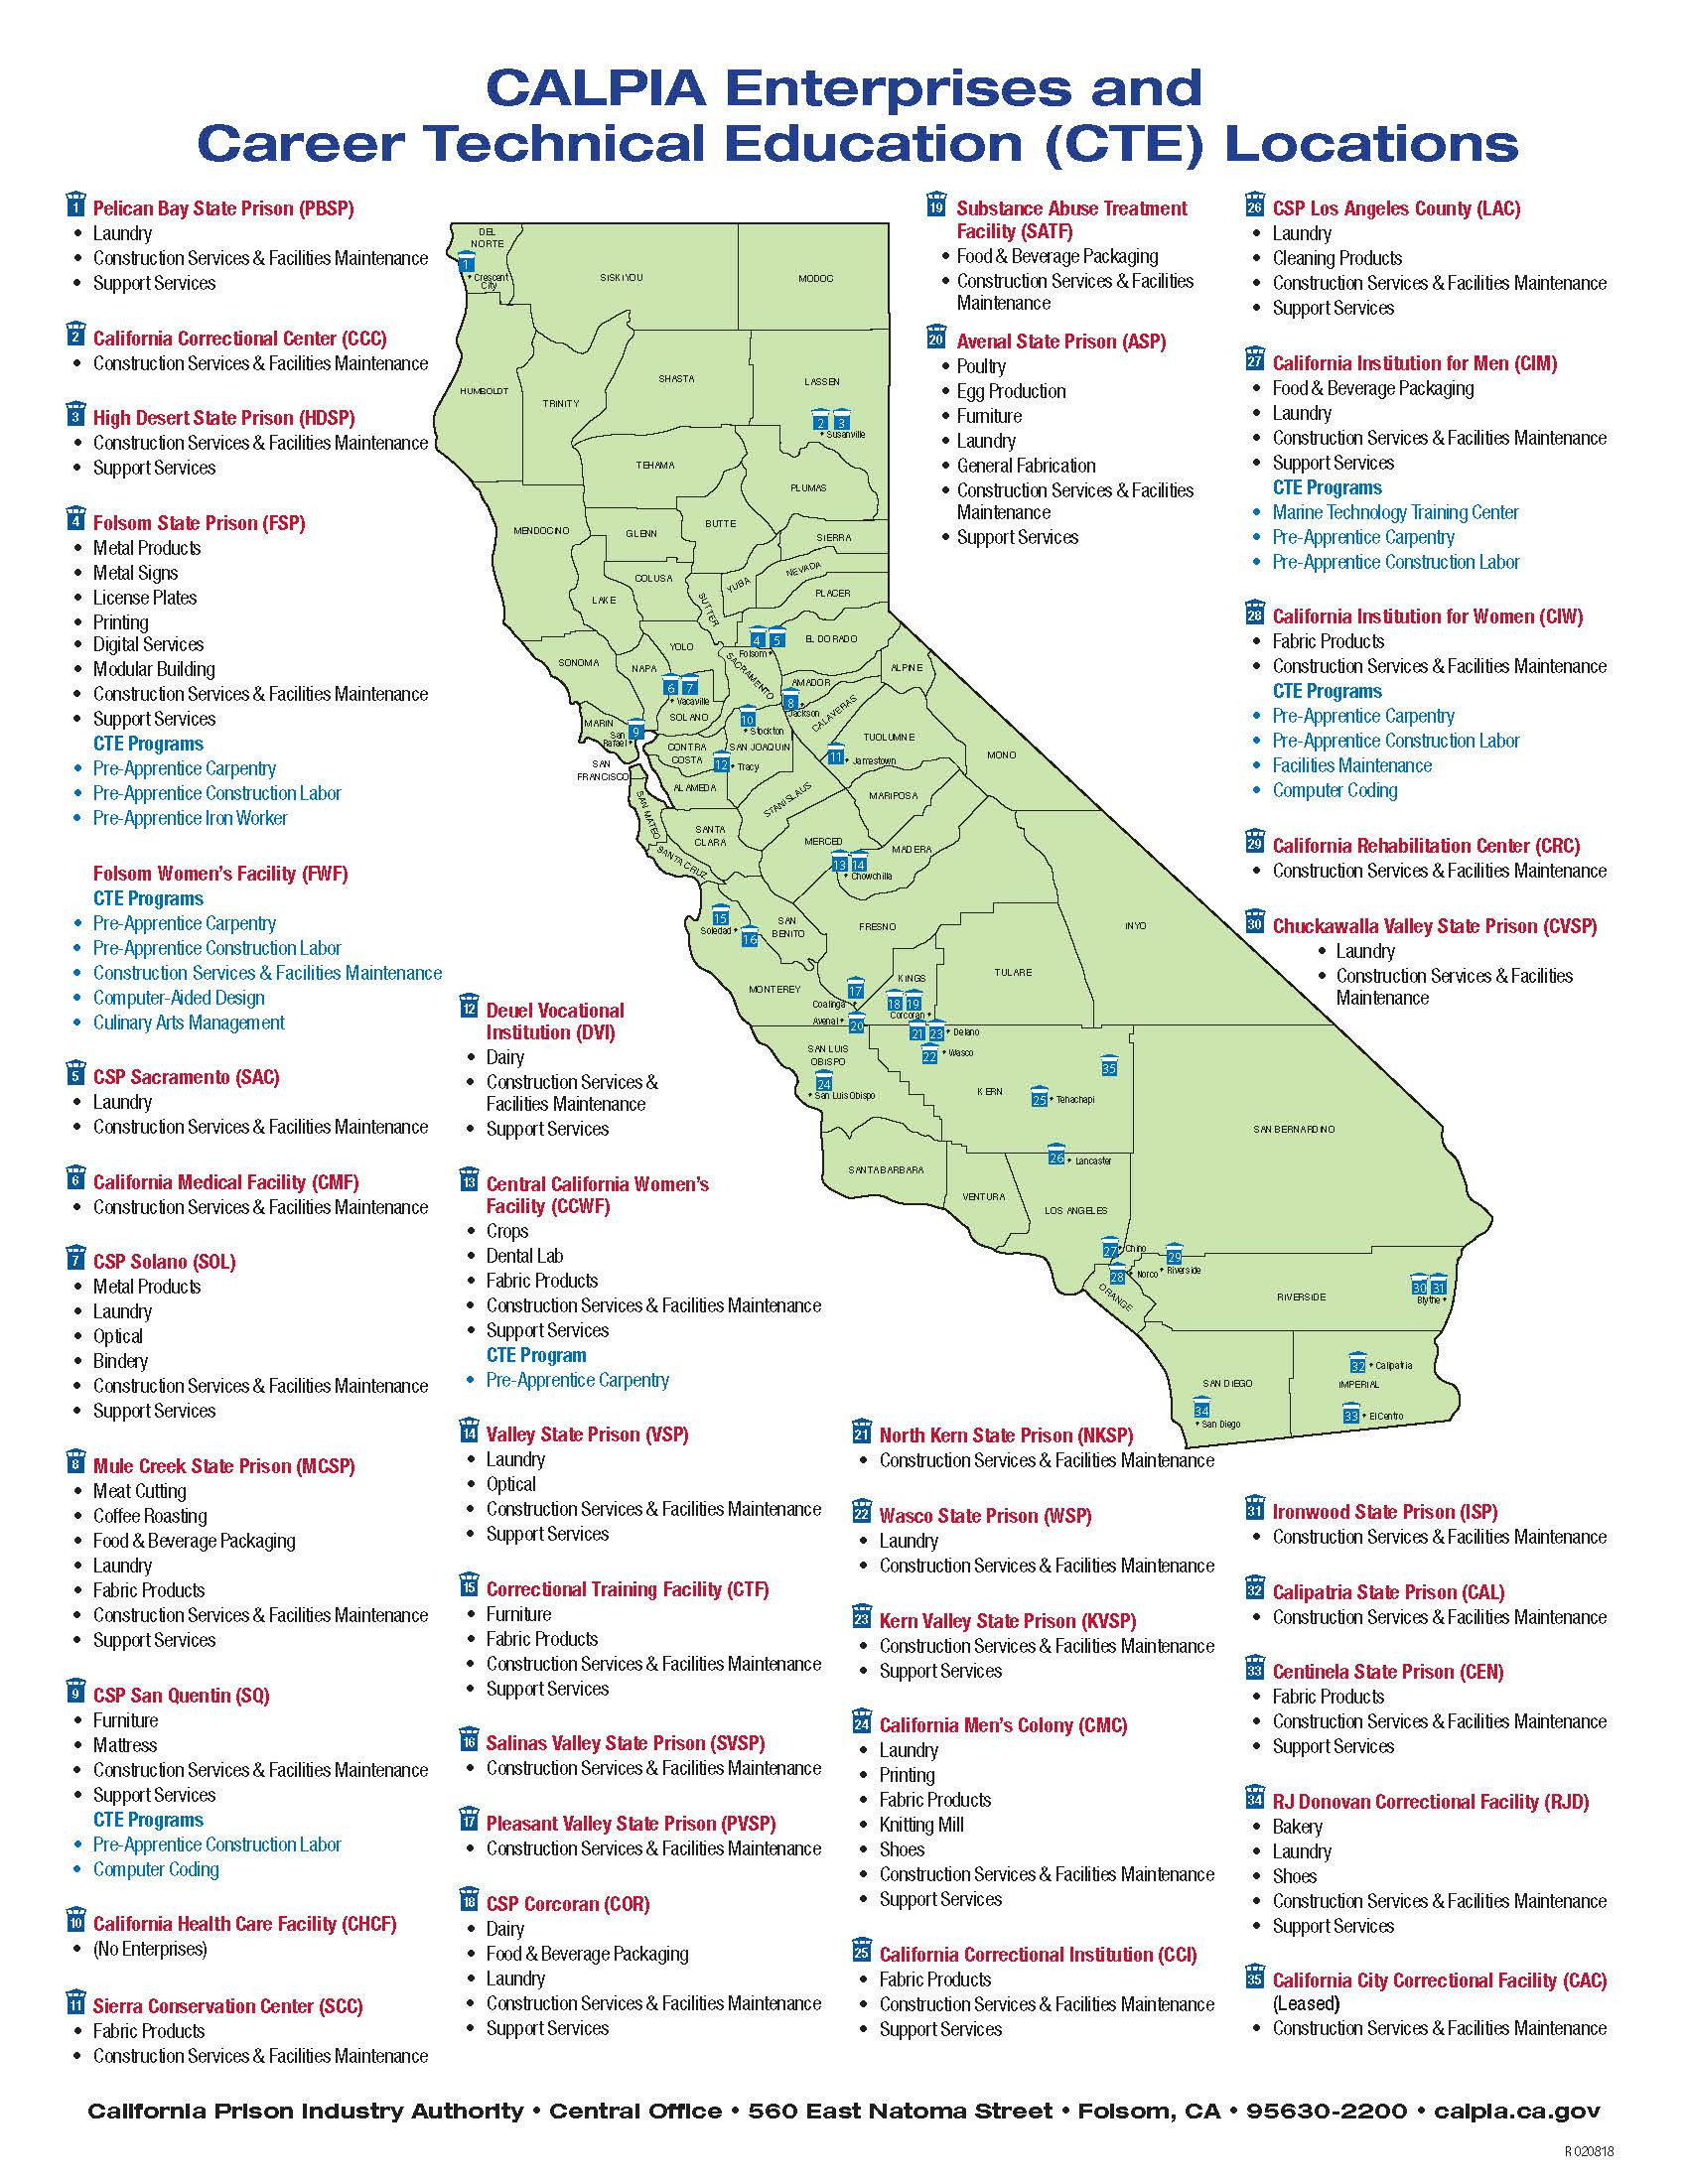 Cdcr Prison Map Fresh California State Prison Locations Map Simple - California State Prisons Map